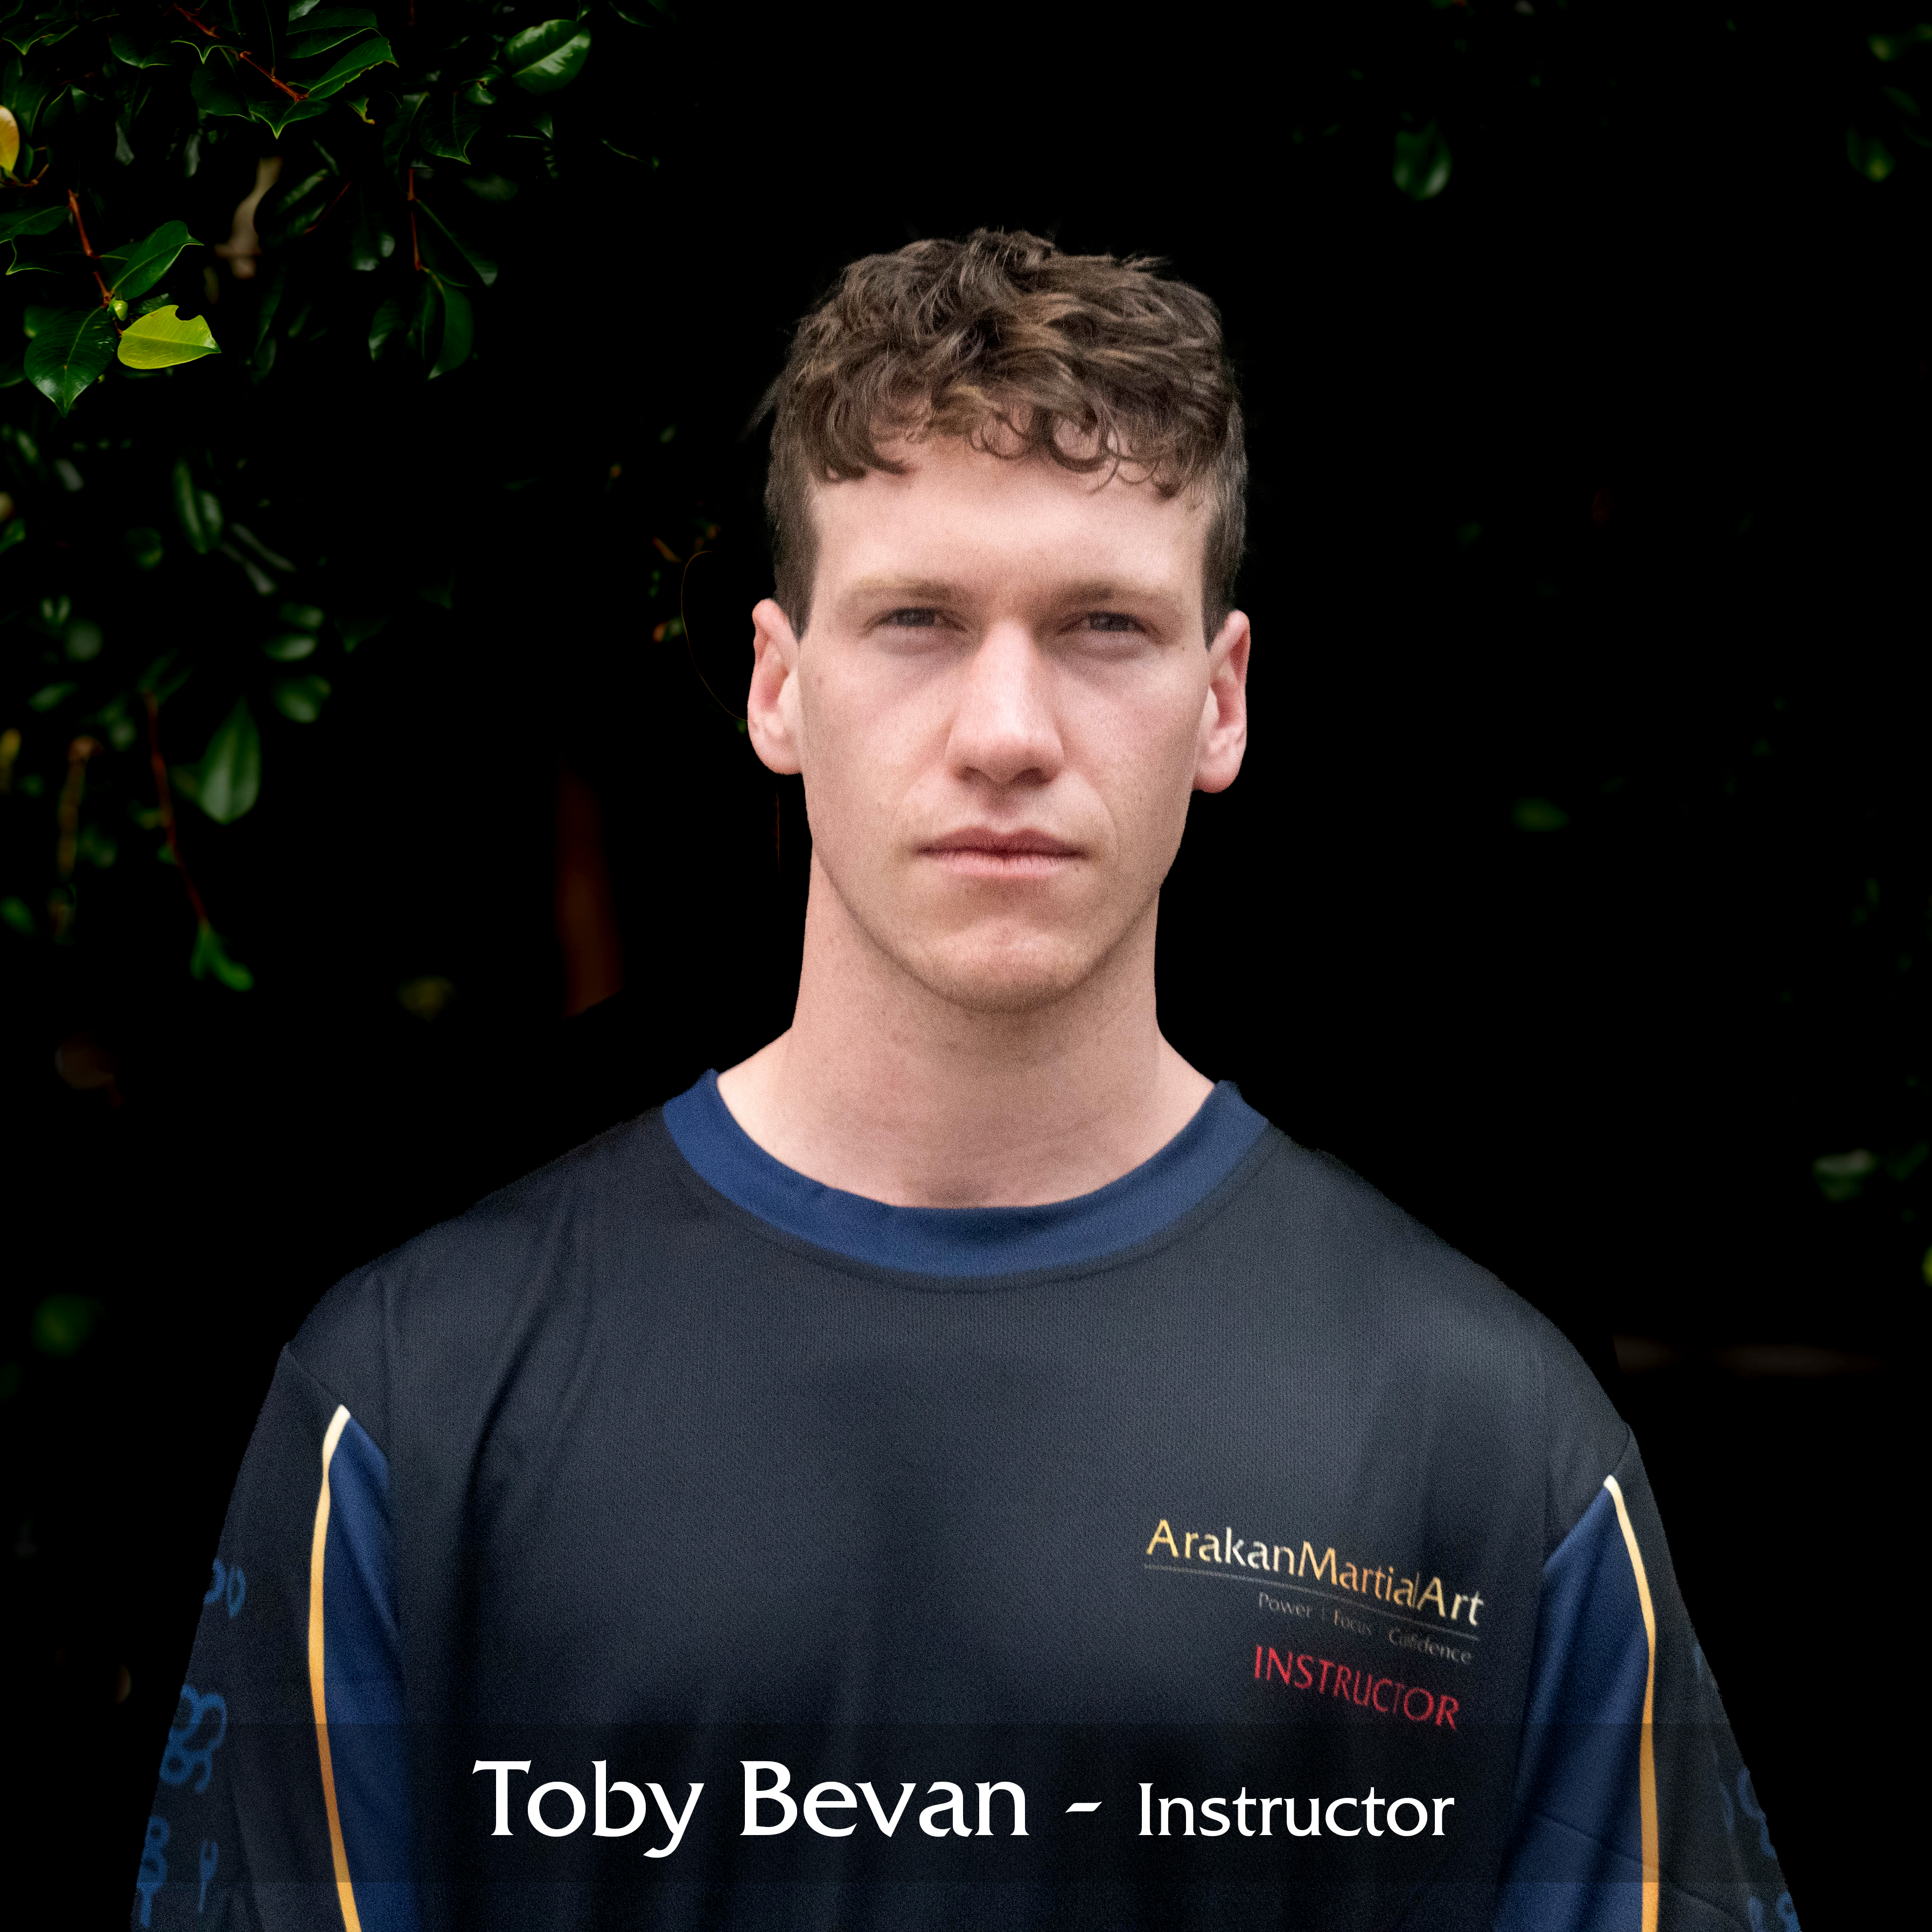 Toby Bevan